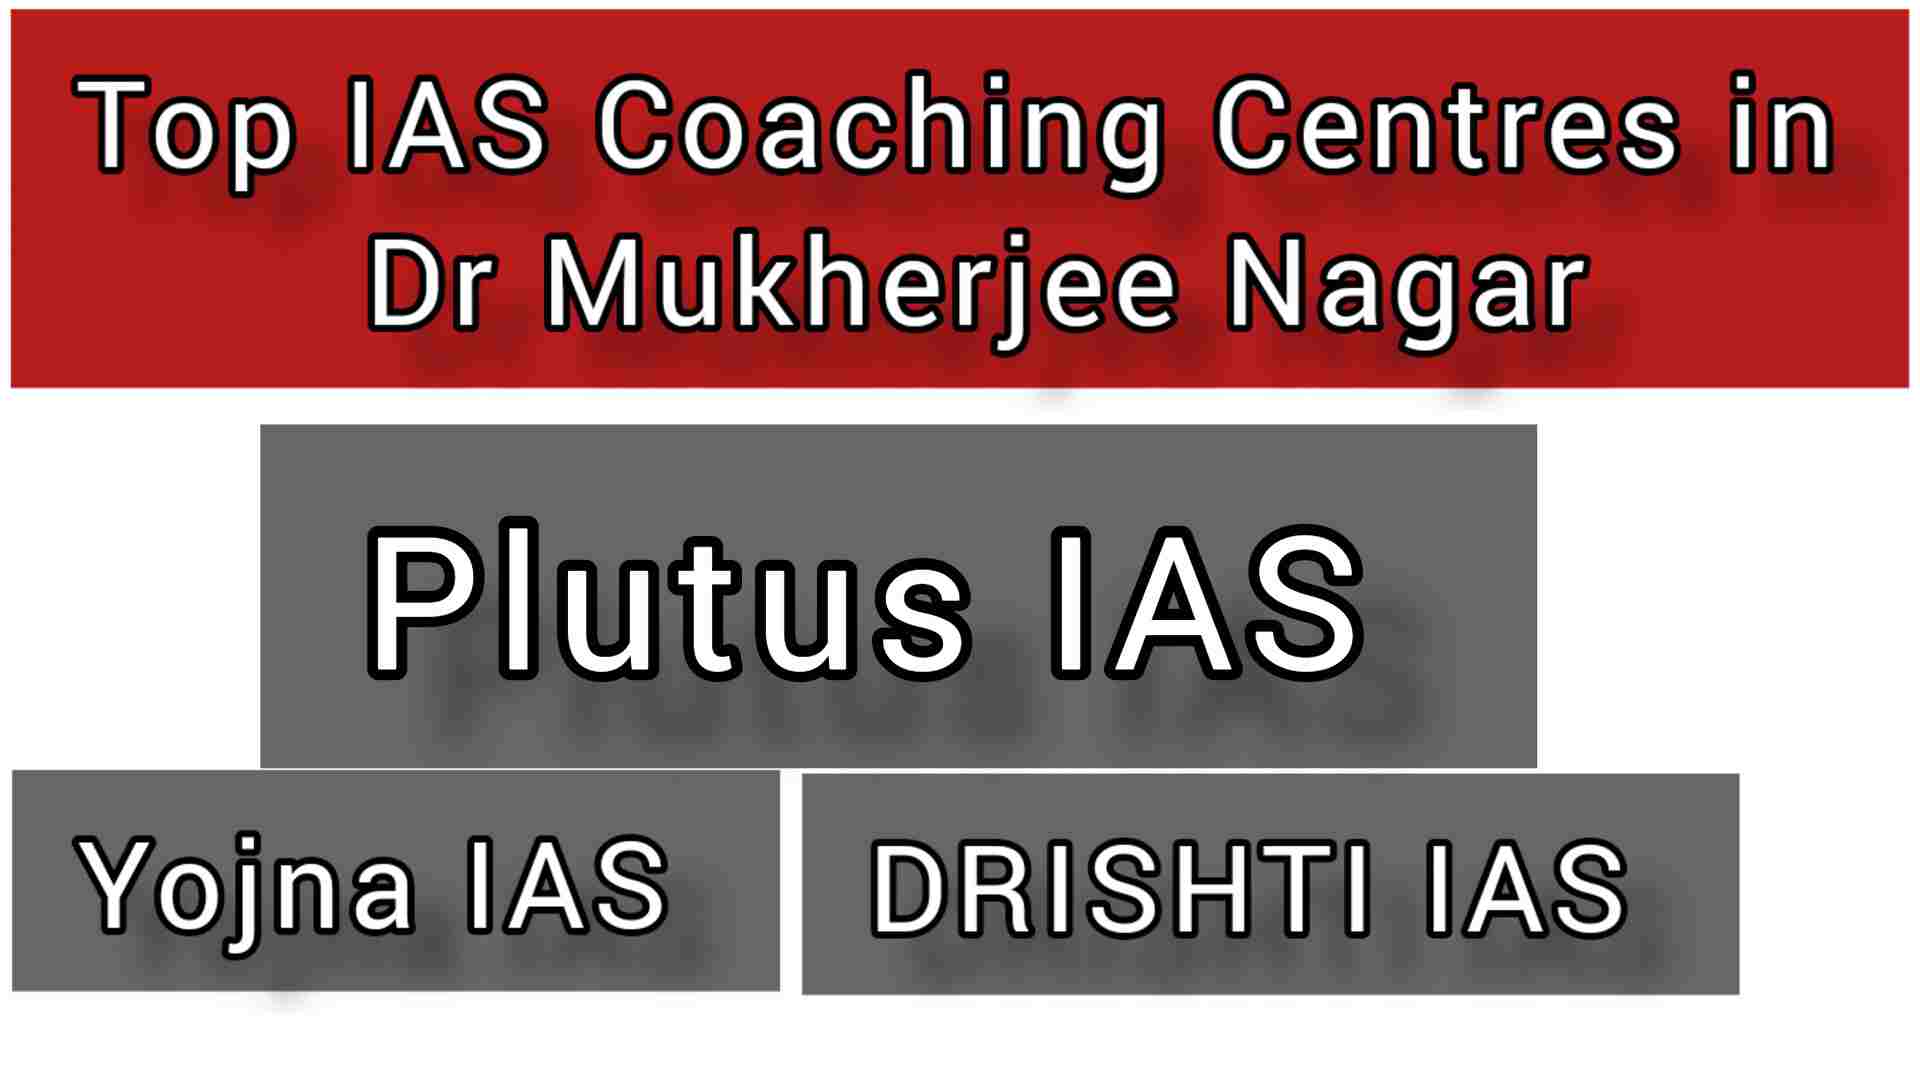 Top IAS Coaching Centres in Dr Mukherjee Nagar